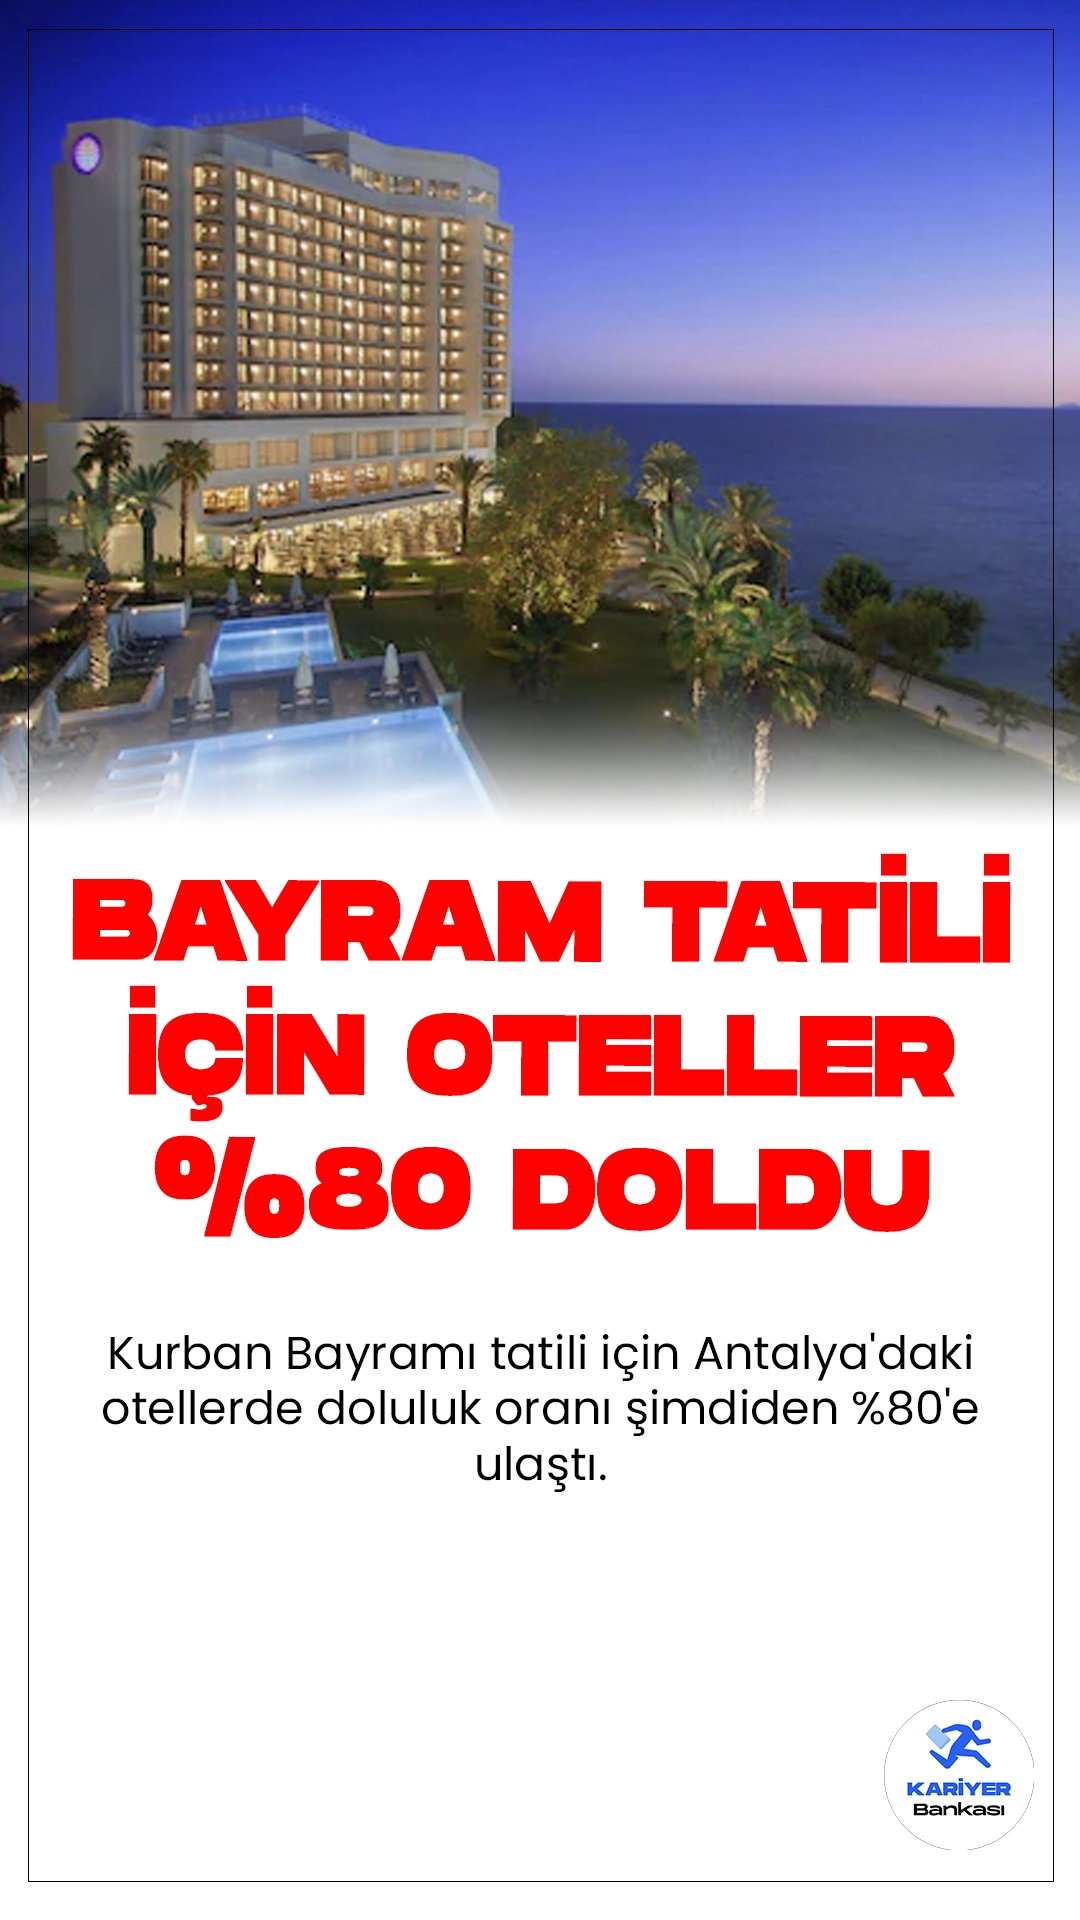 Antalya'da Bayram Tatili Otelleri %80 Doldu.Kurban Bayramı tatili için Antalya'daki otellerde doluluk oranı şimdiden %80'e ulaştı. Bu durum, geçmiş yıllarda haziran ayında görülmeyen konaklama sayısının bu sene elde edileceğini gösteriyor.